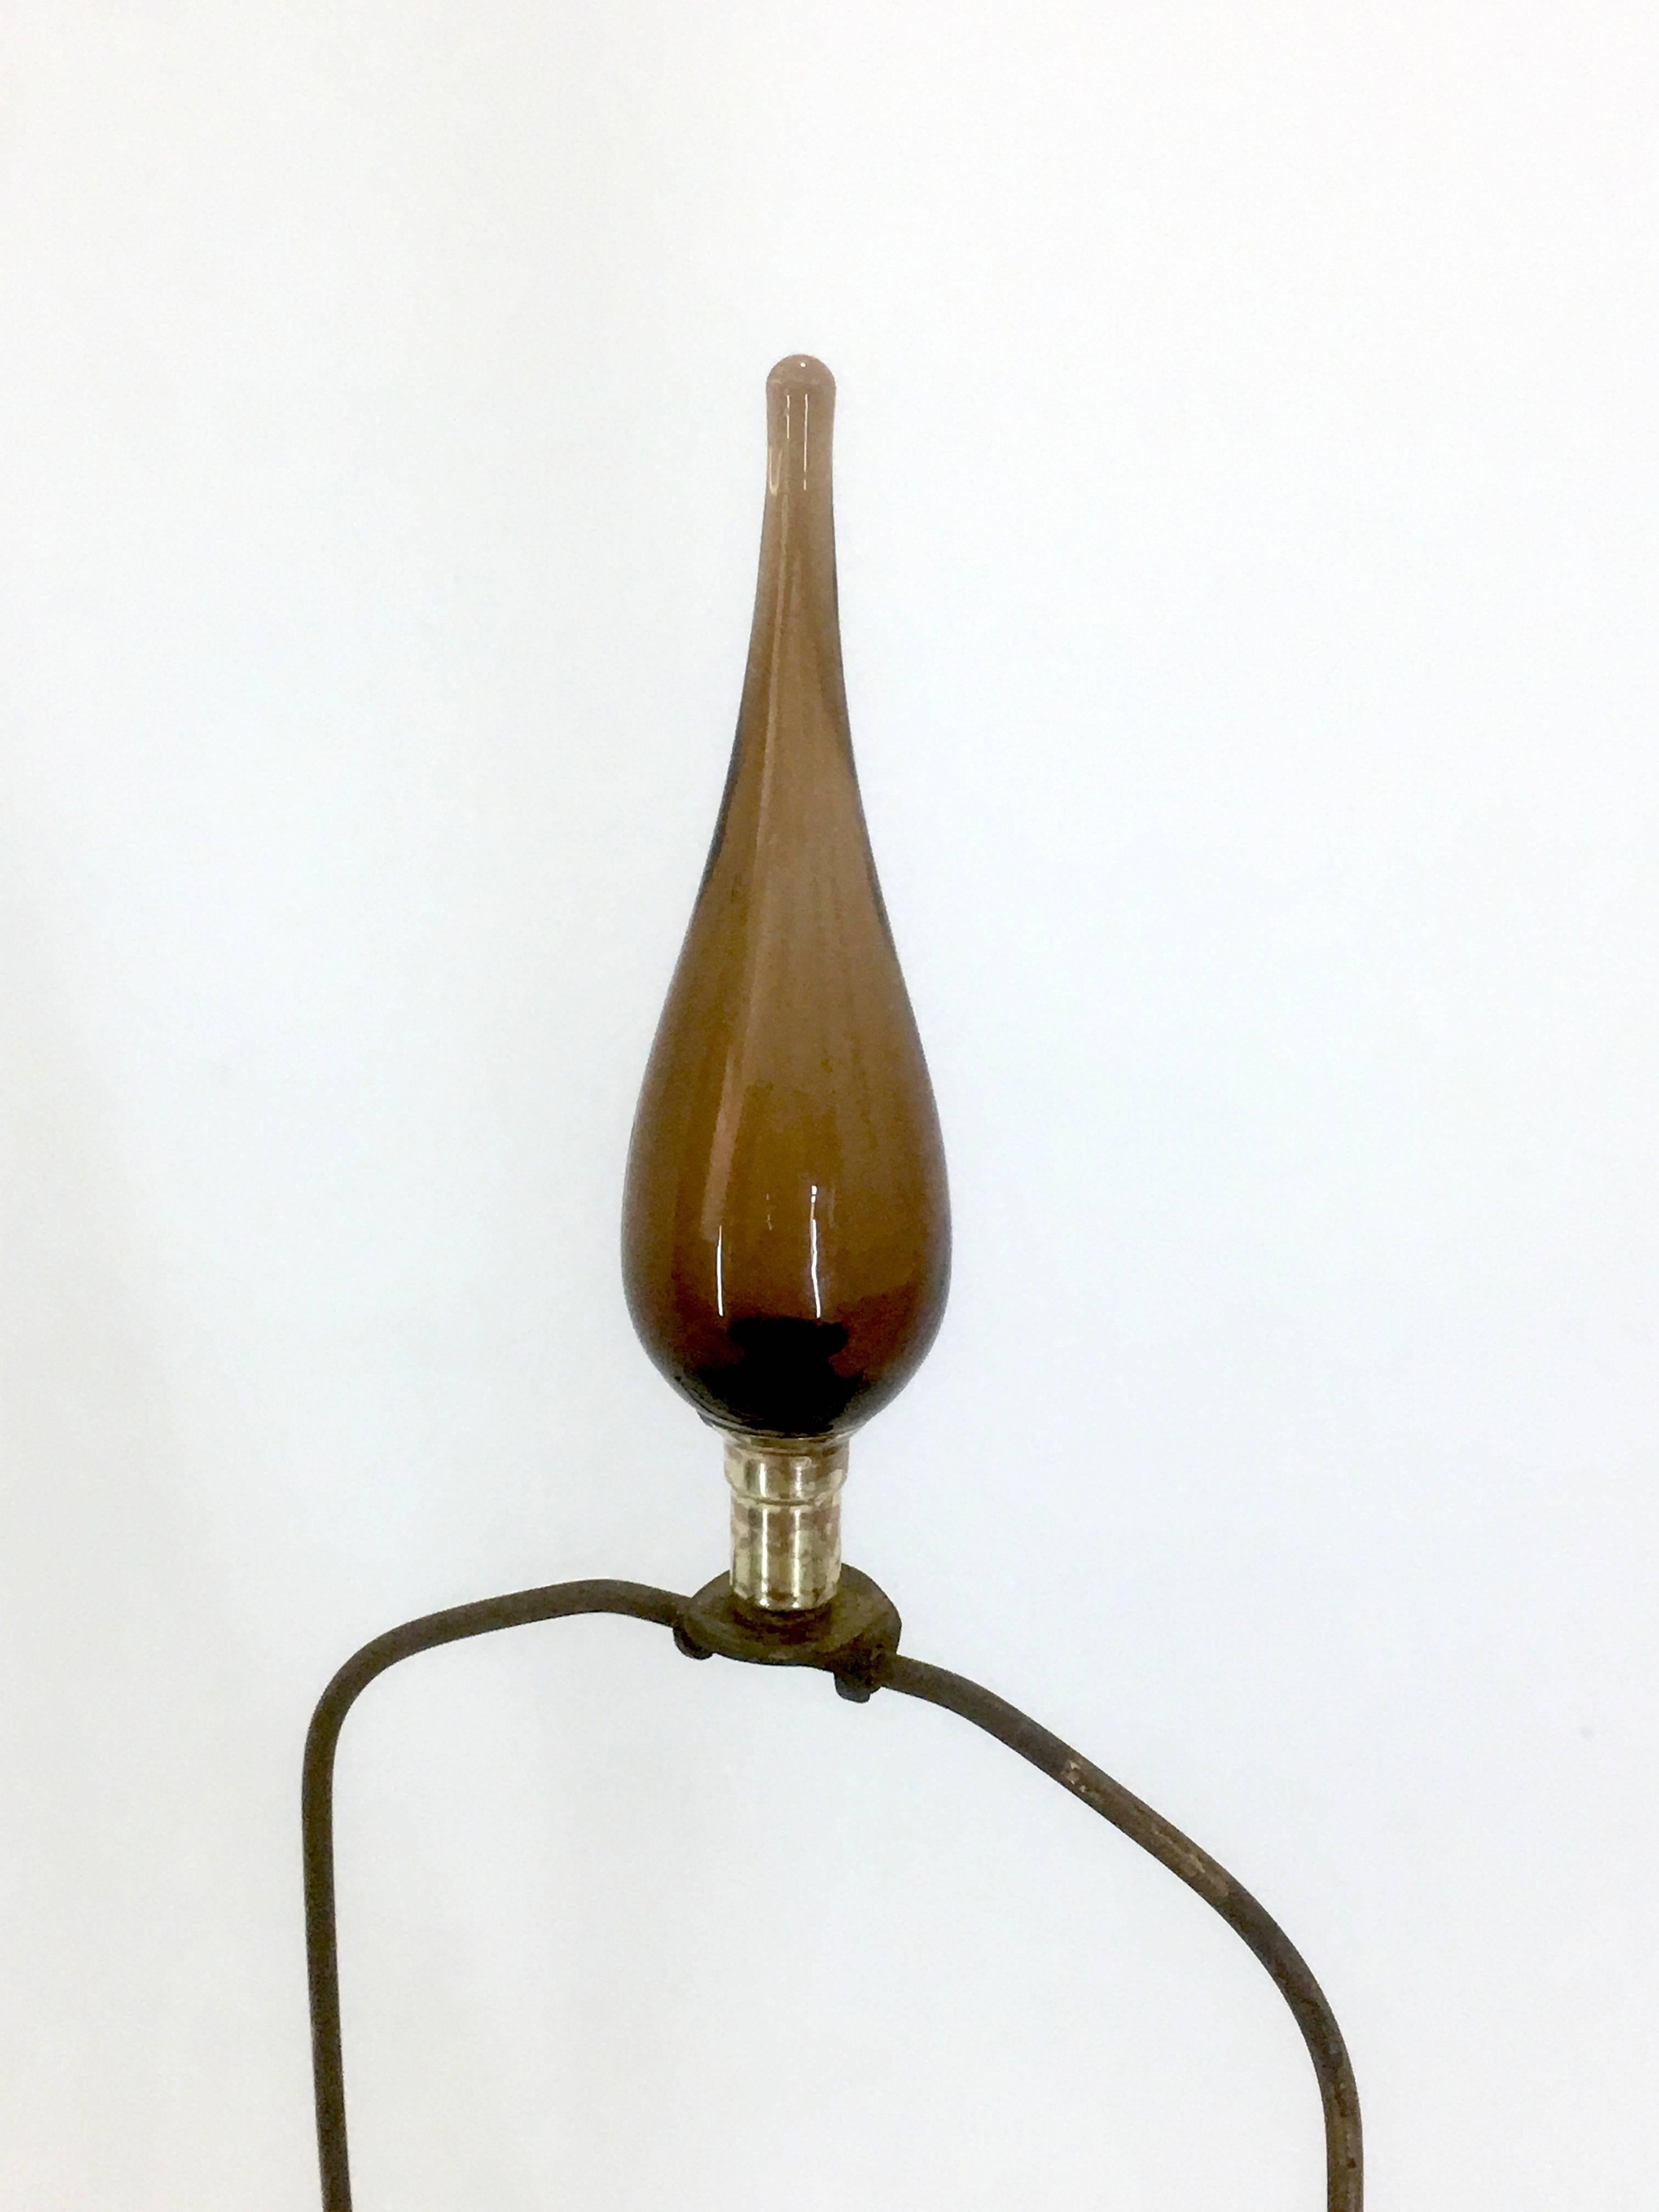 Brass Monumental Blenko Lamp in Chestnut, 1965